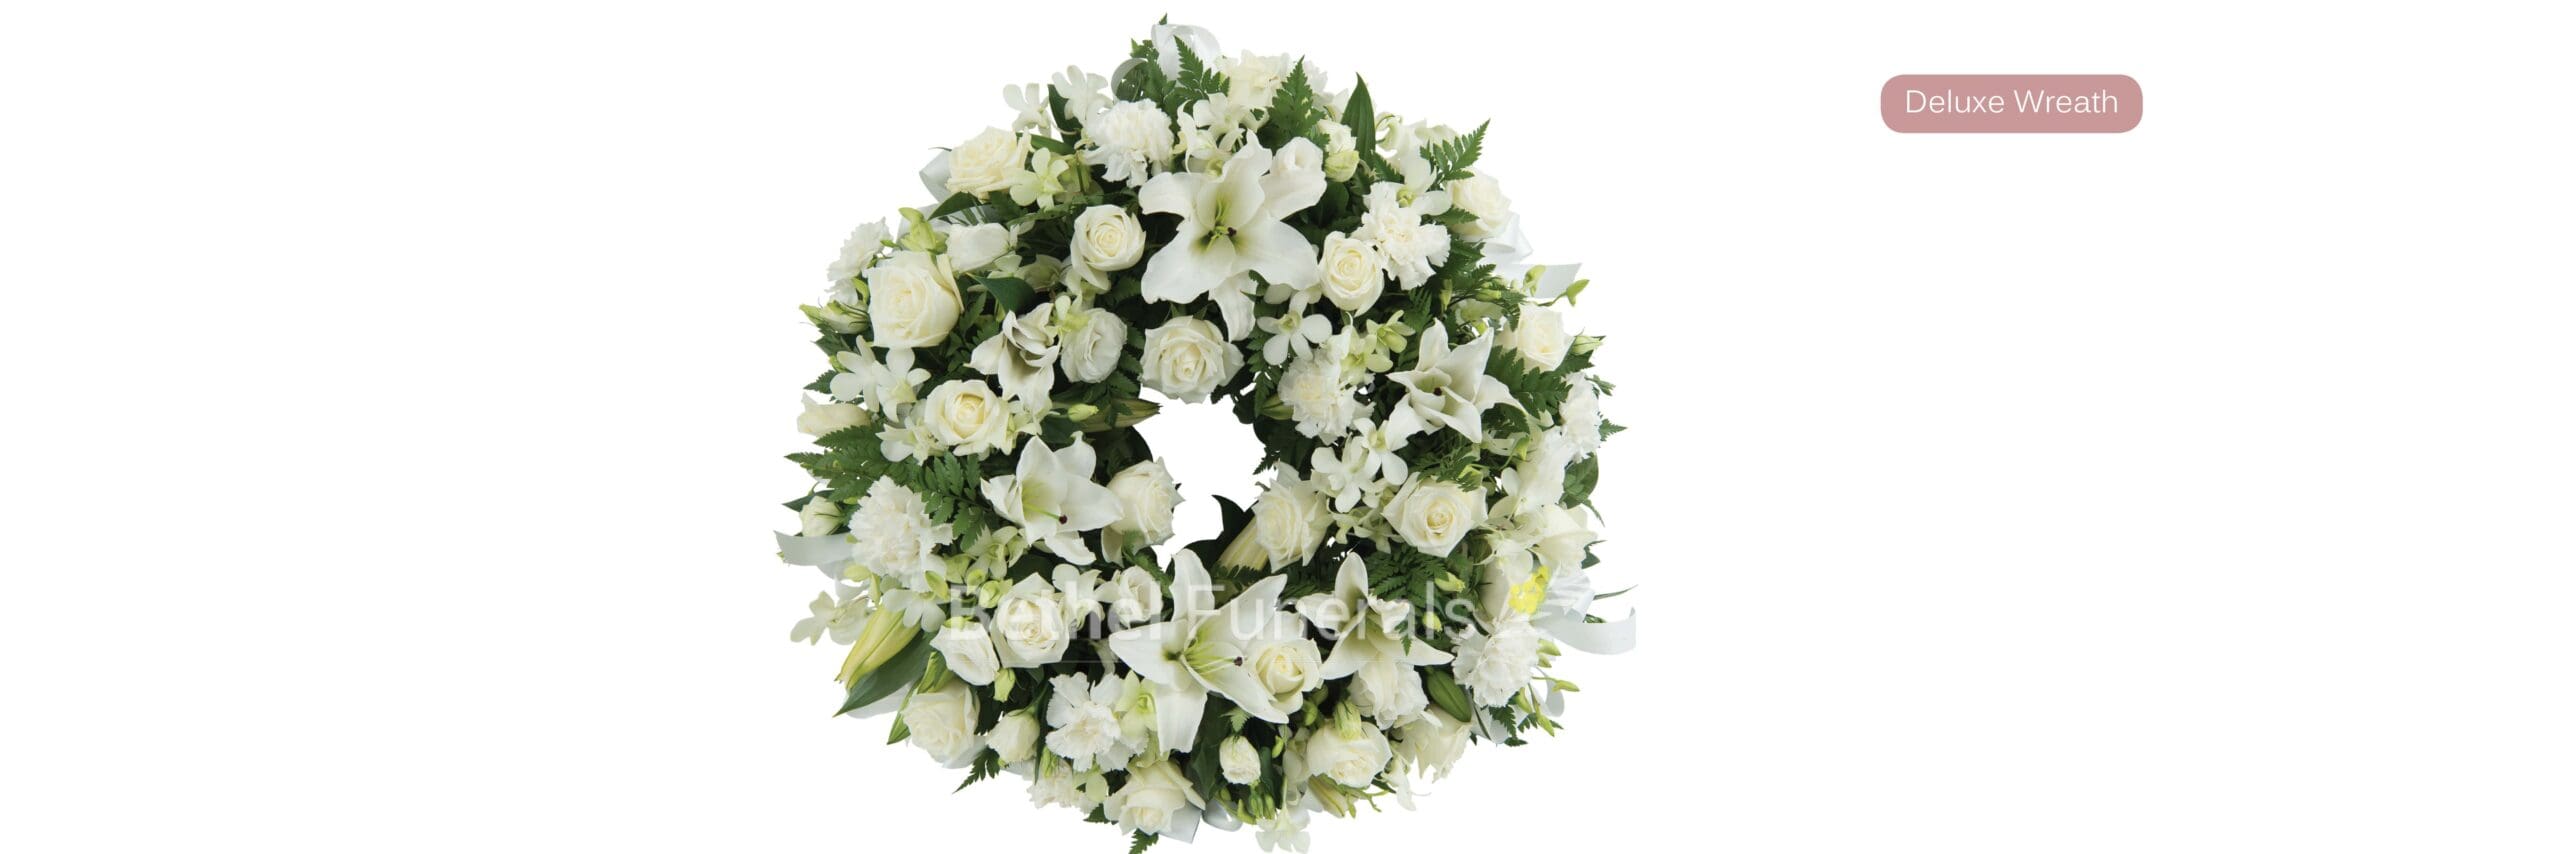 Deluxe Wreath Funeral Flowers